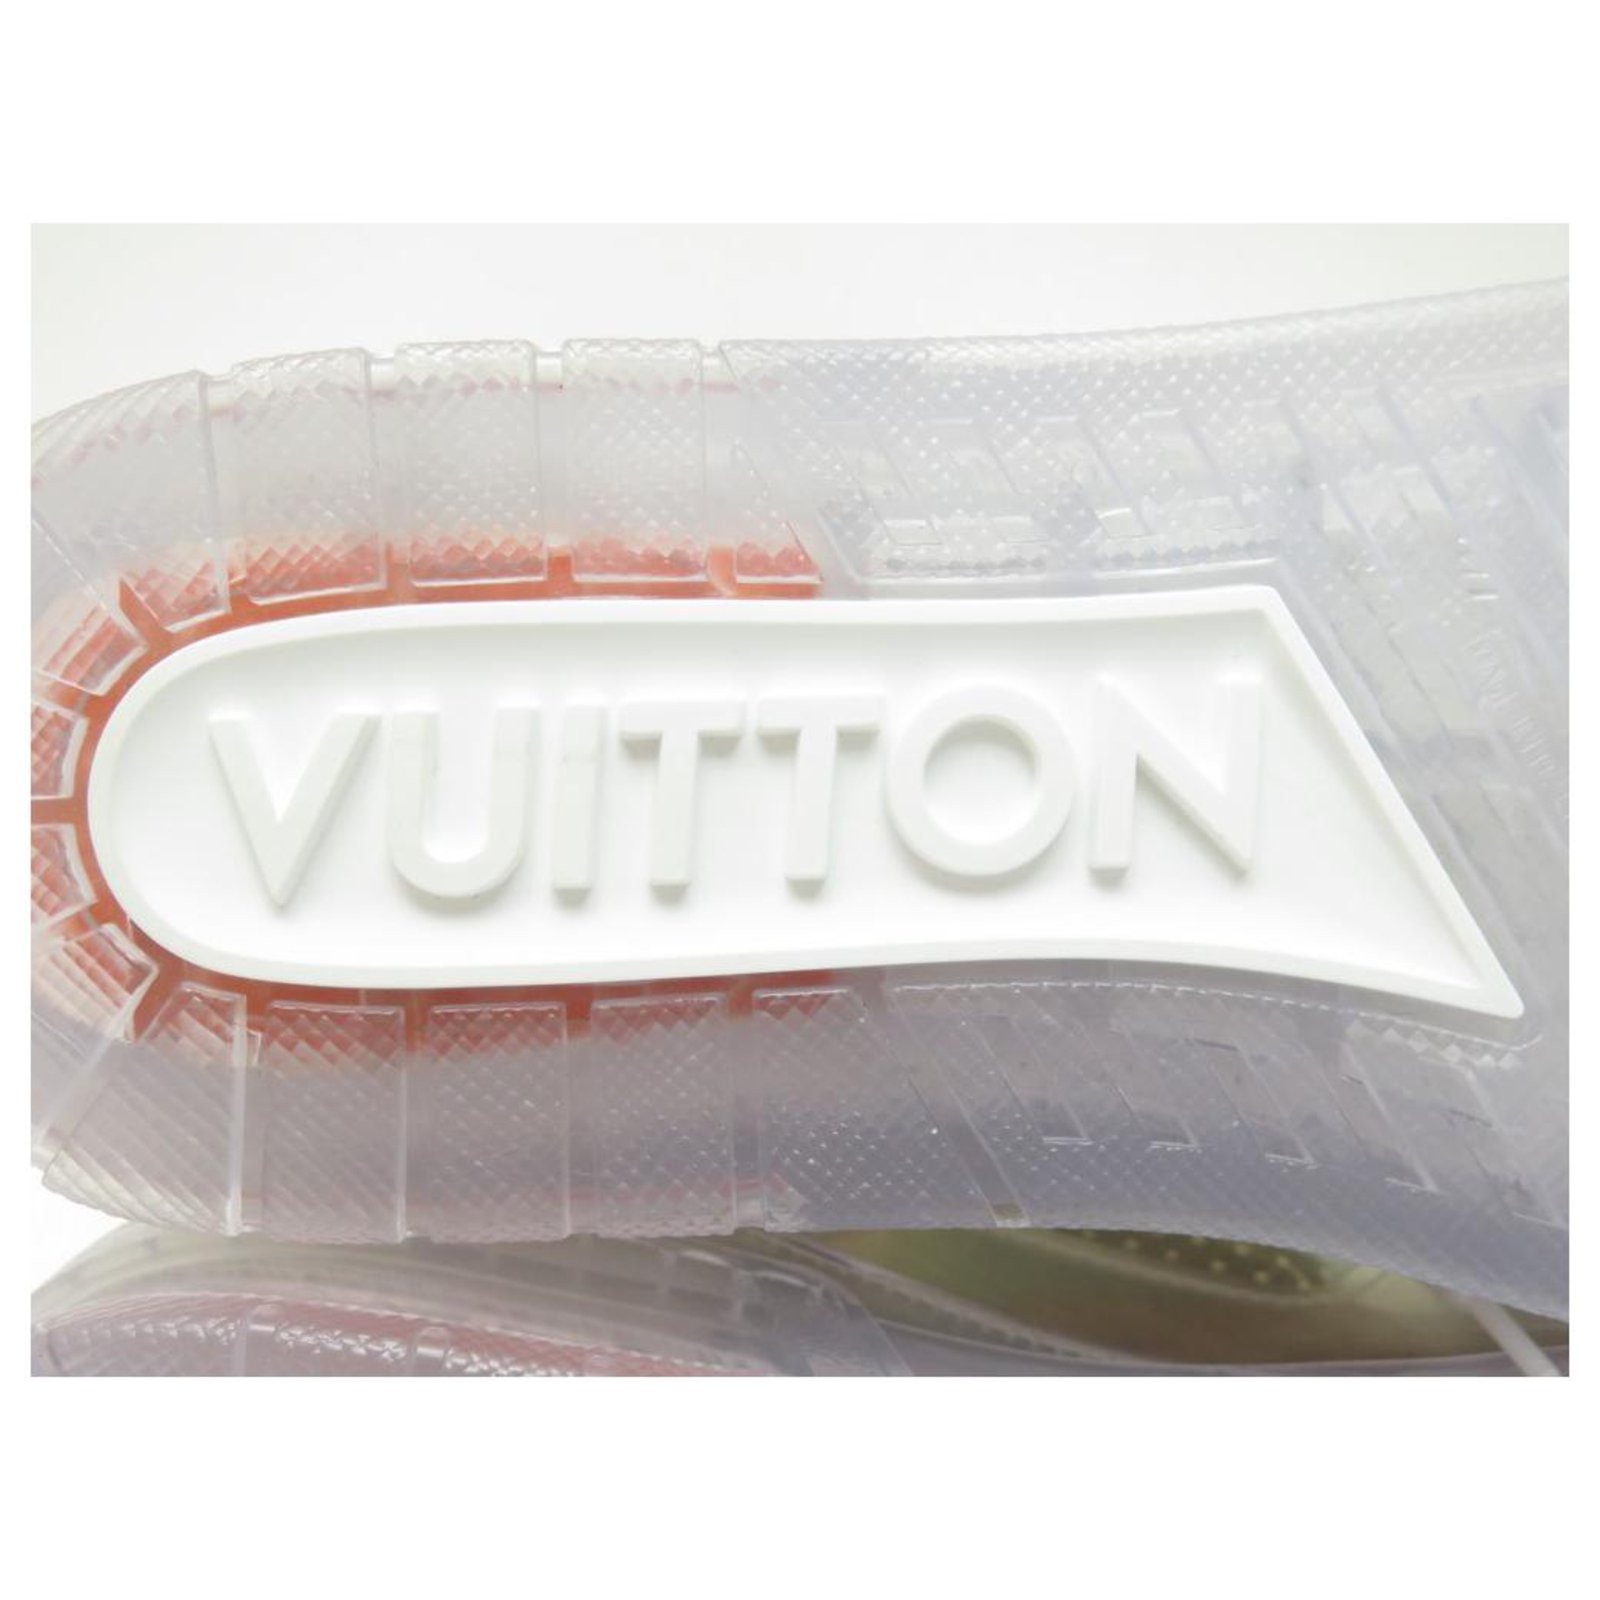 Louis Vuitton presenta las nuevas zapatillas metalizadas que verás a los  que más saben de moda